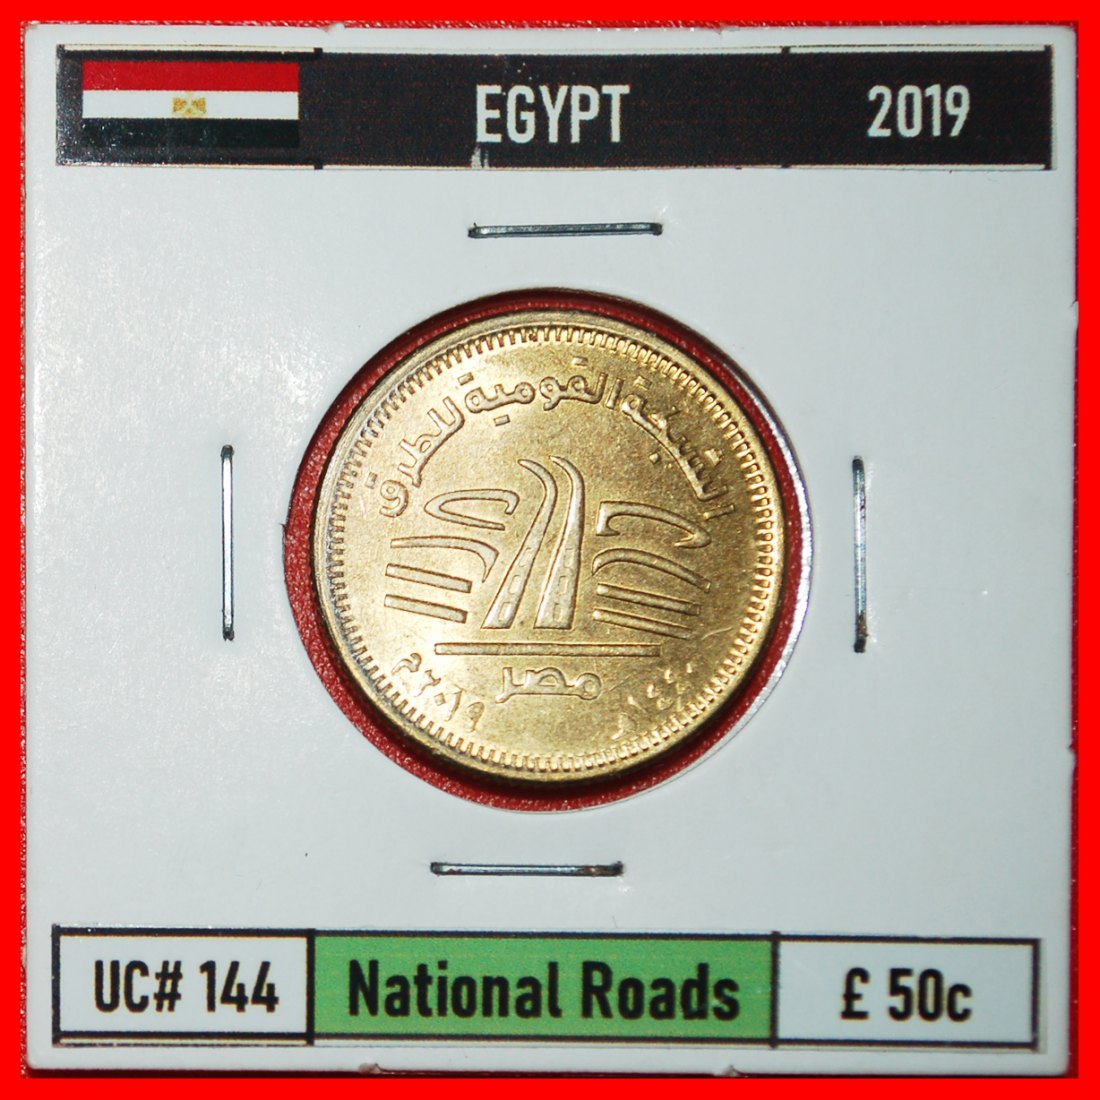  * STRASSEN STEMPEL 1: ÄGYPTEN ★ 50 PIASTREN 1440-2019 STG STEMPELGLANZ! IN PACKUNG!★OHNE VORBEHALT!   